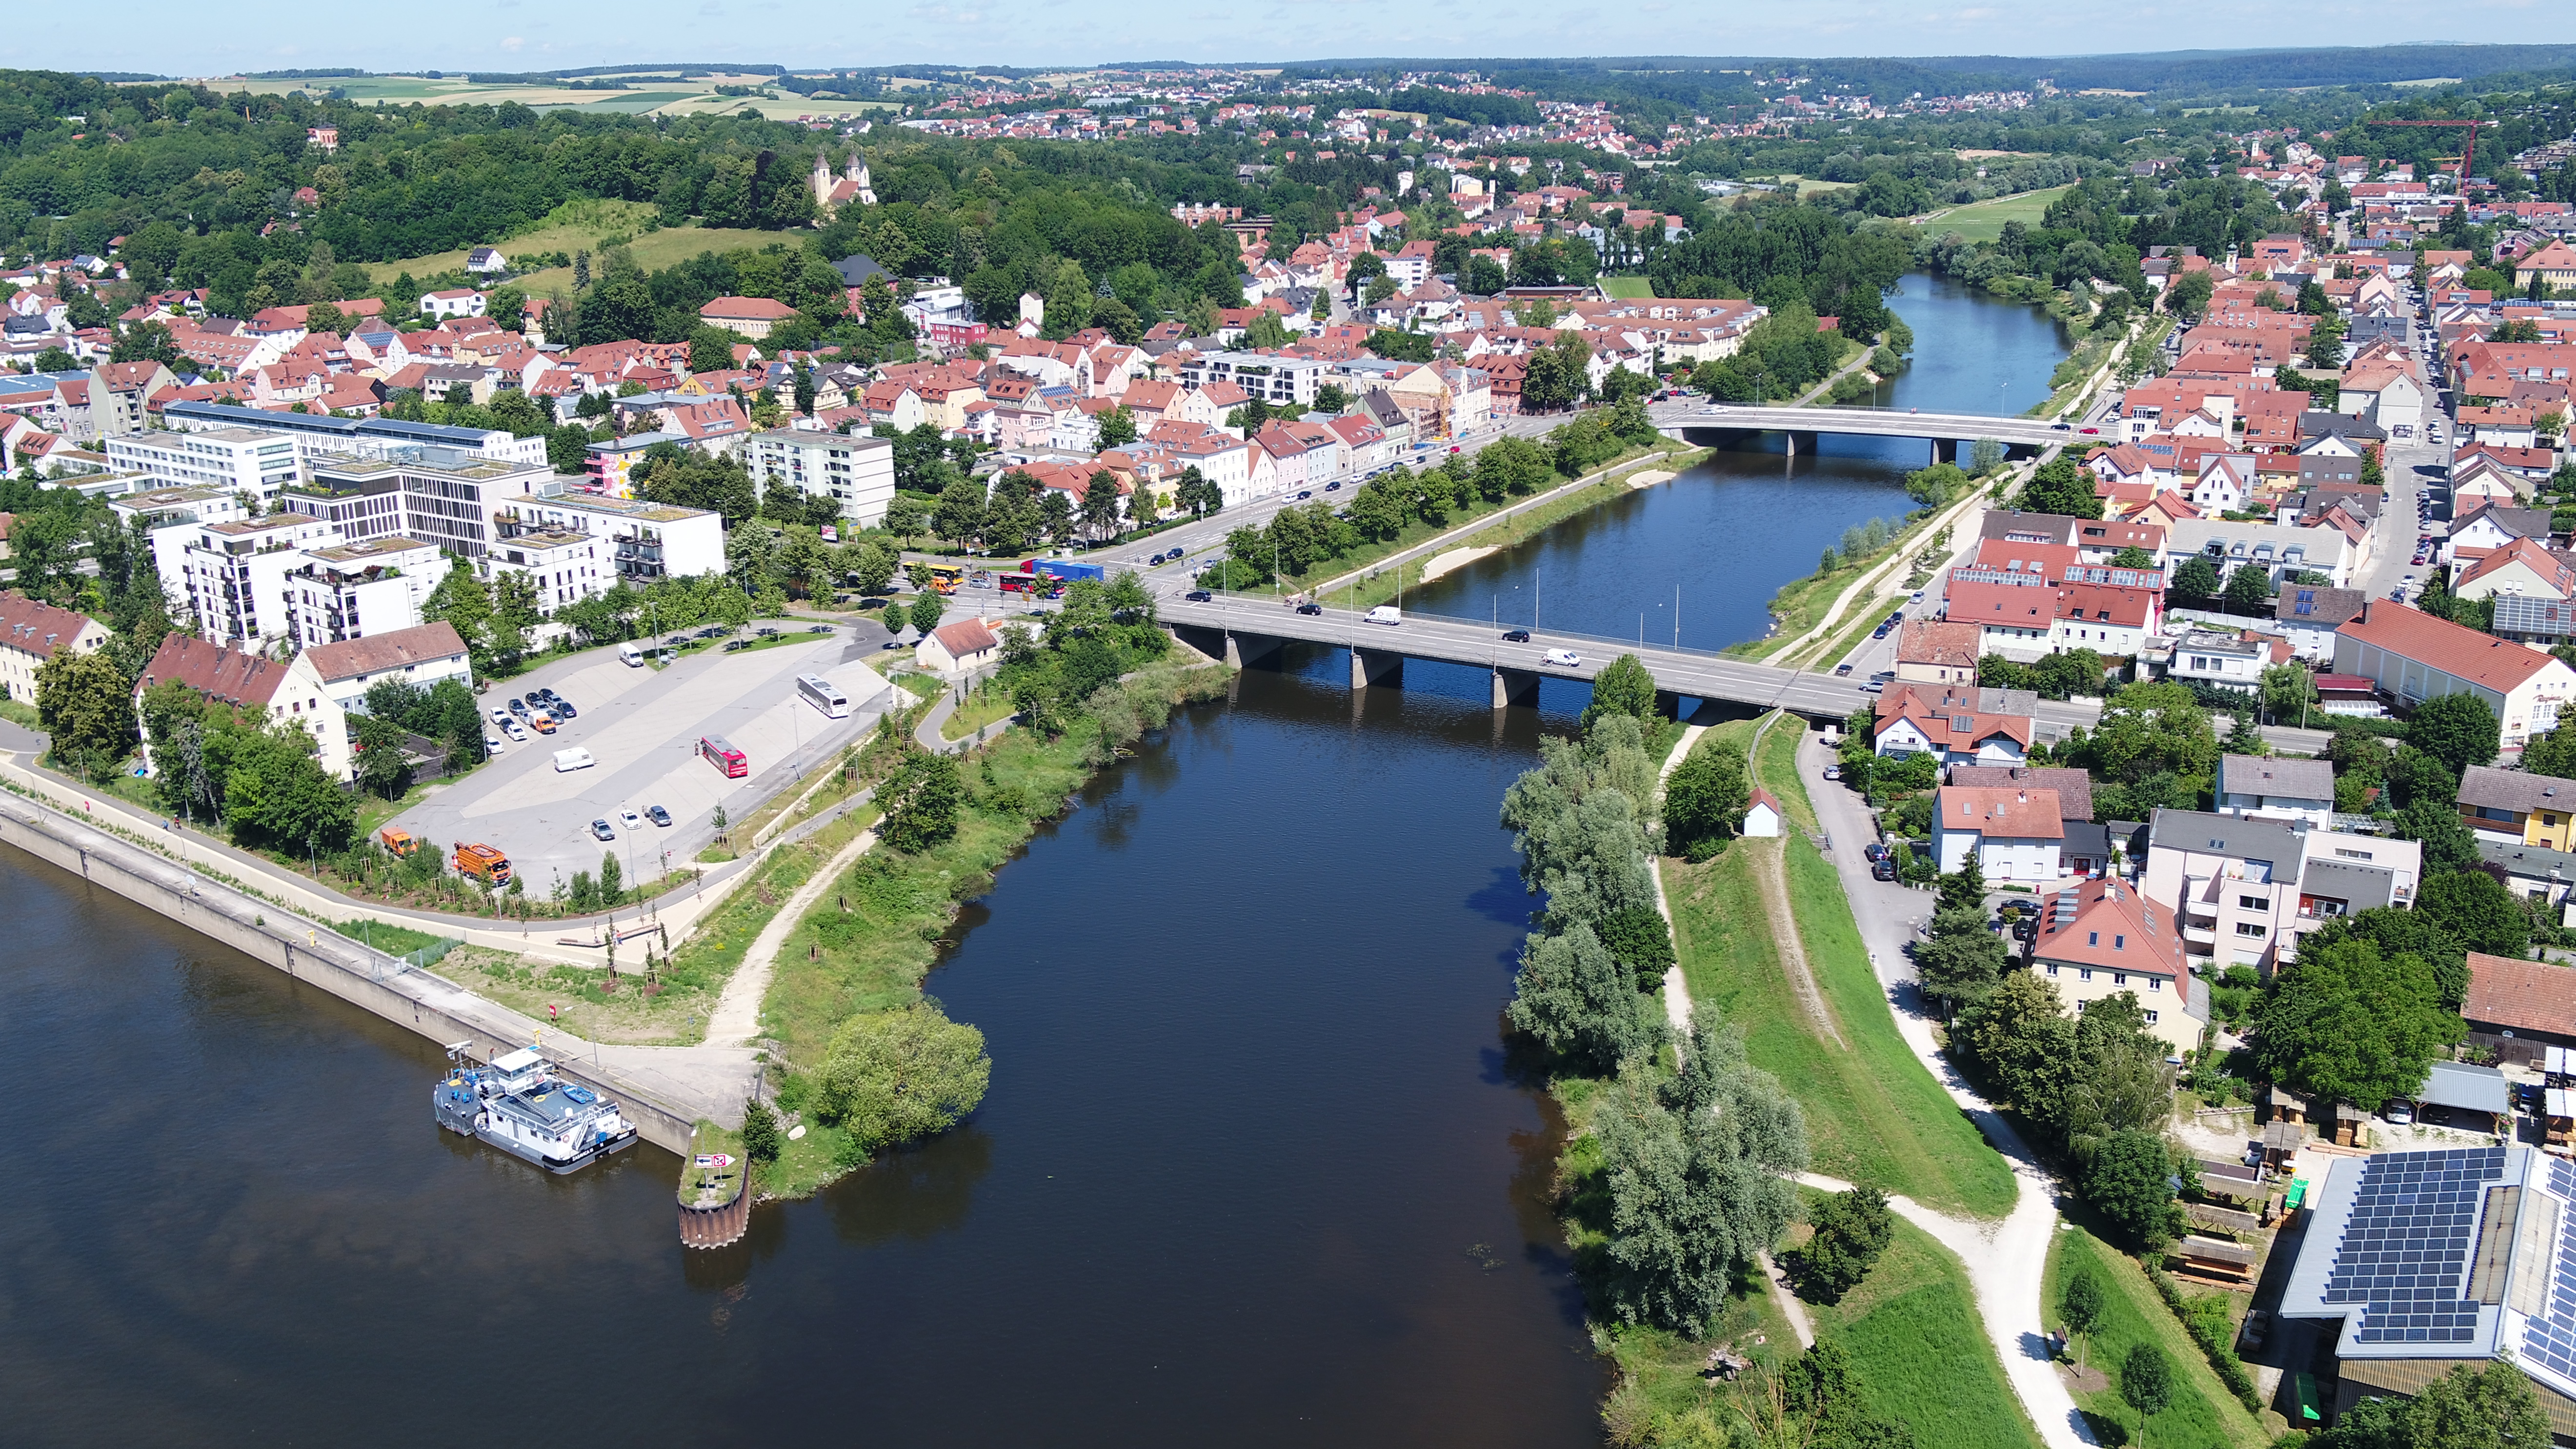 Luftbild von der Einmündung des Flusses Regen in die Donau, hintereinander über den Regen zwei Brücken, auf beiden Uferseiten die neuen Hochwasserschutzmaßnahmen mit Bepflanzung und Bebauung 